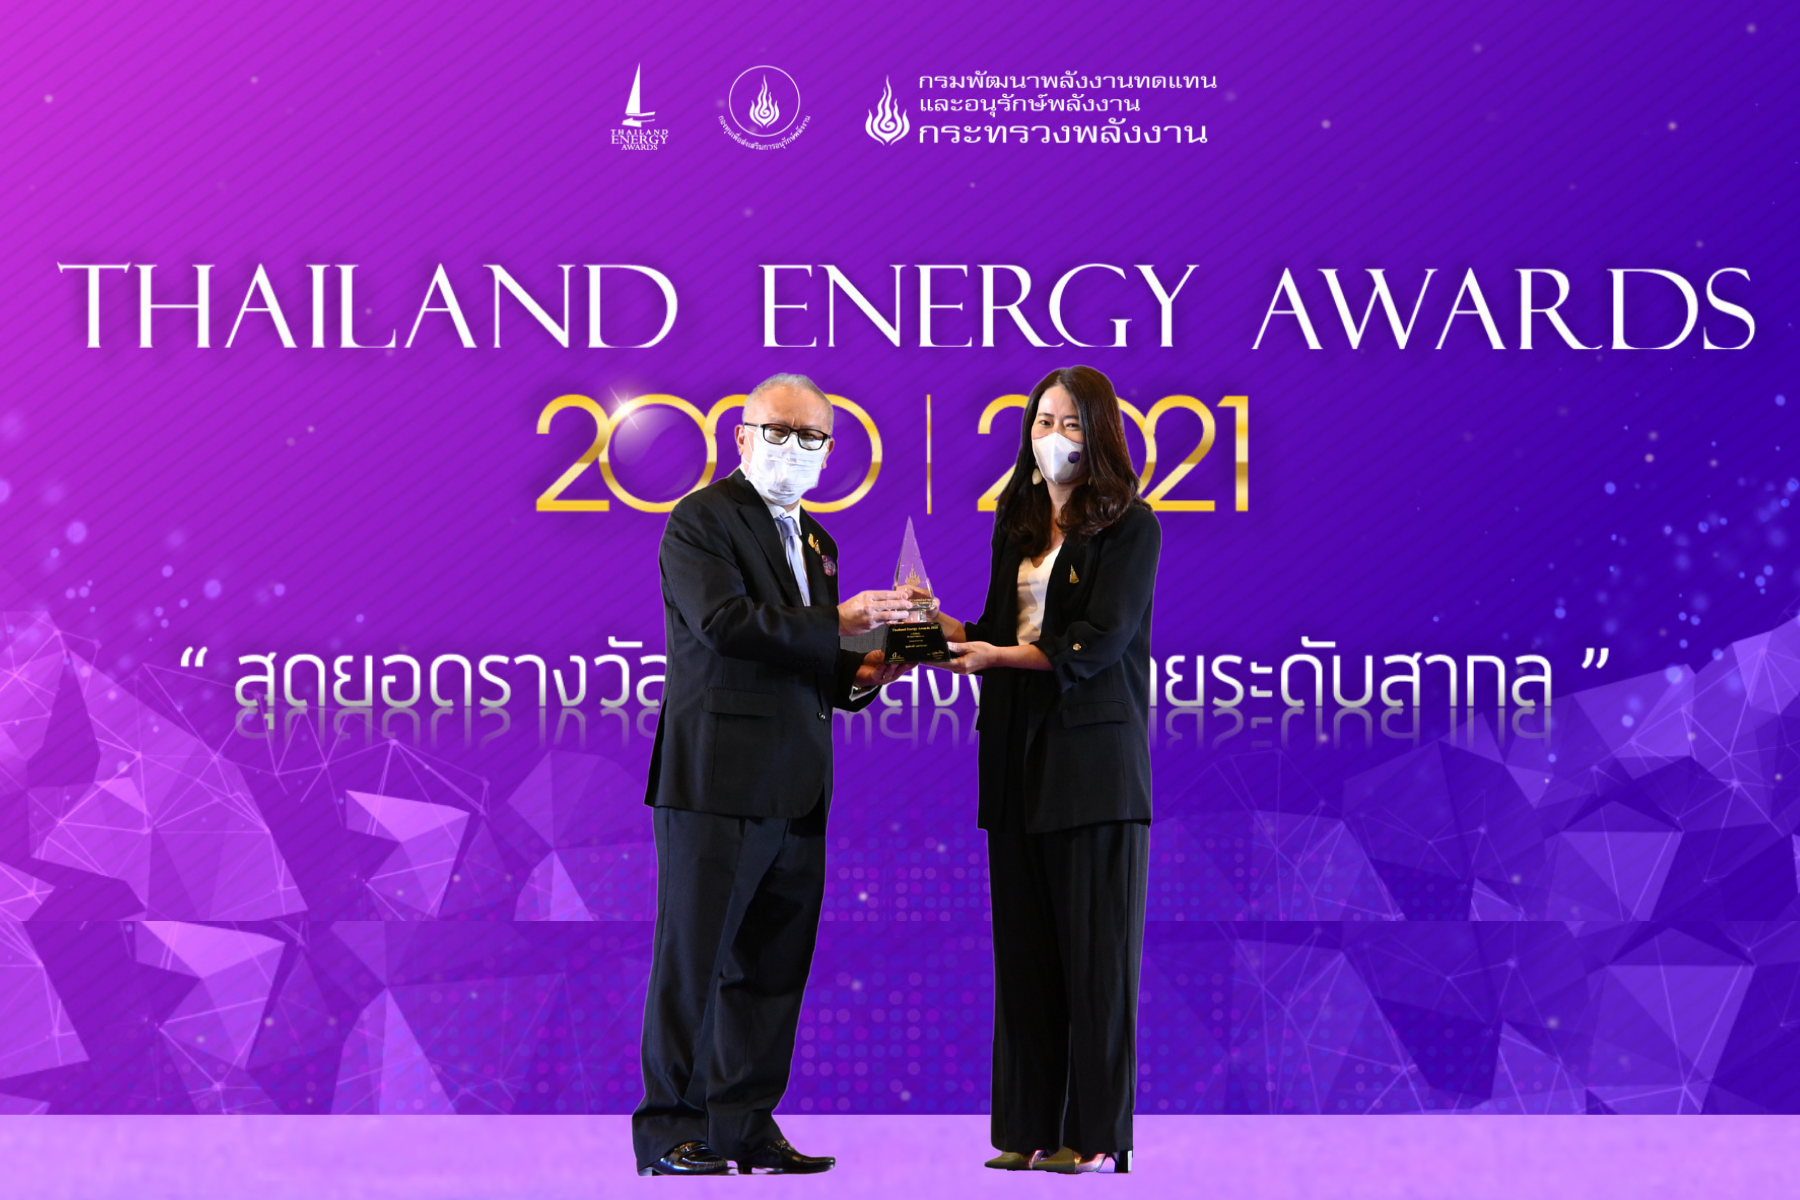 เมกาบางนา รับรางวัลดีเด่นในโครงการ Thailand Energy Awards 2020 ตอกย้ำนโยบายการสร้างธุรกิจอย่างมีคุณค่า ดูแลสังคมแบบยั่งยืน